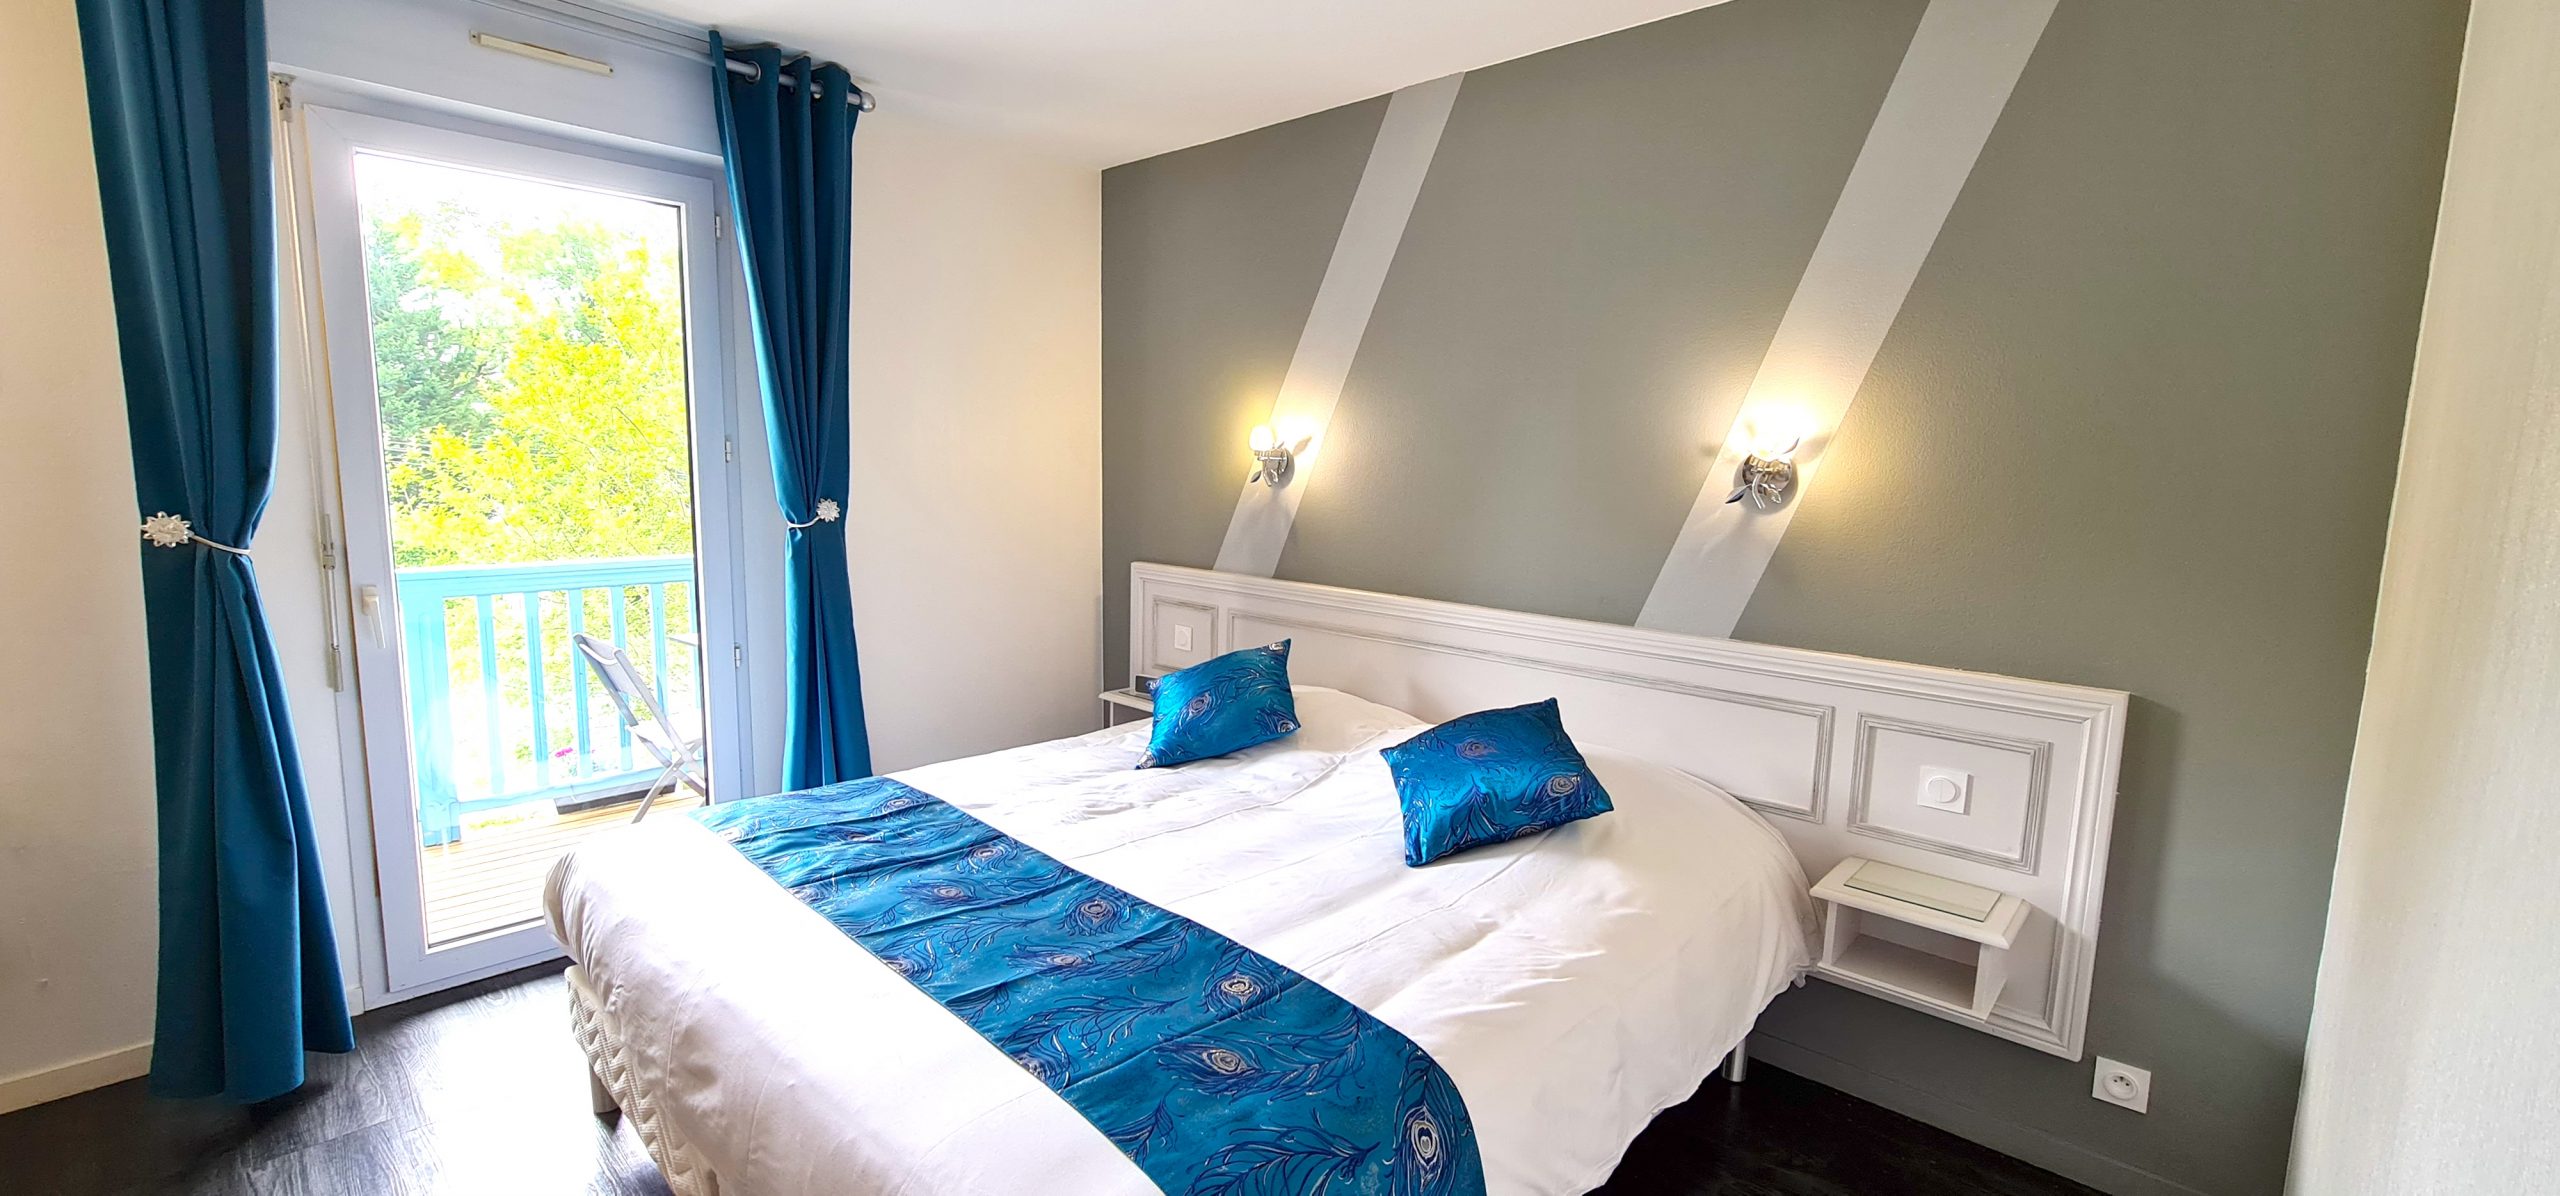 Chambre double confort hostellerie du paon blanc